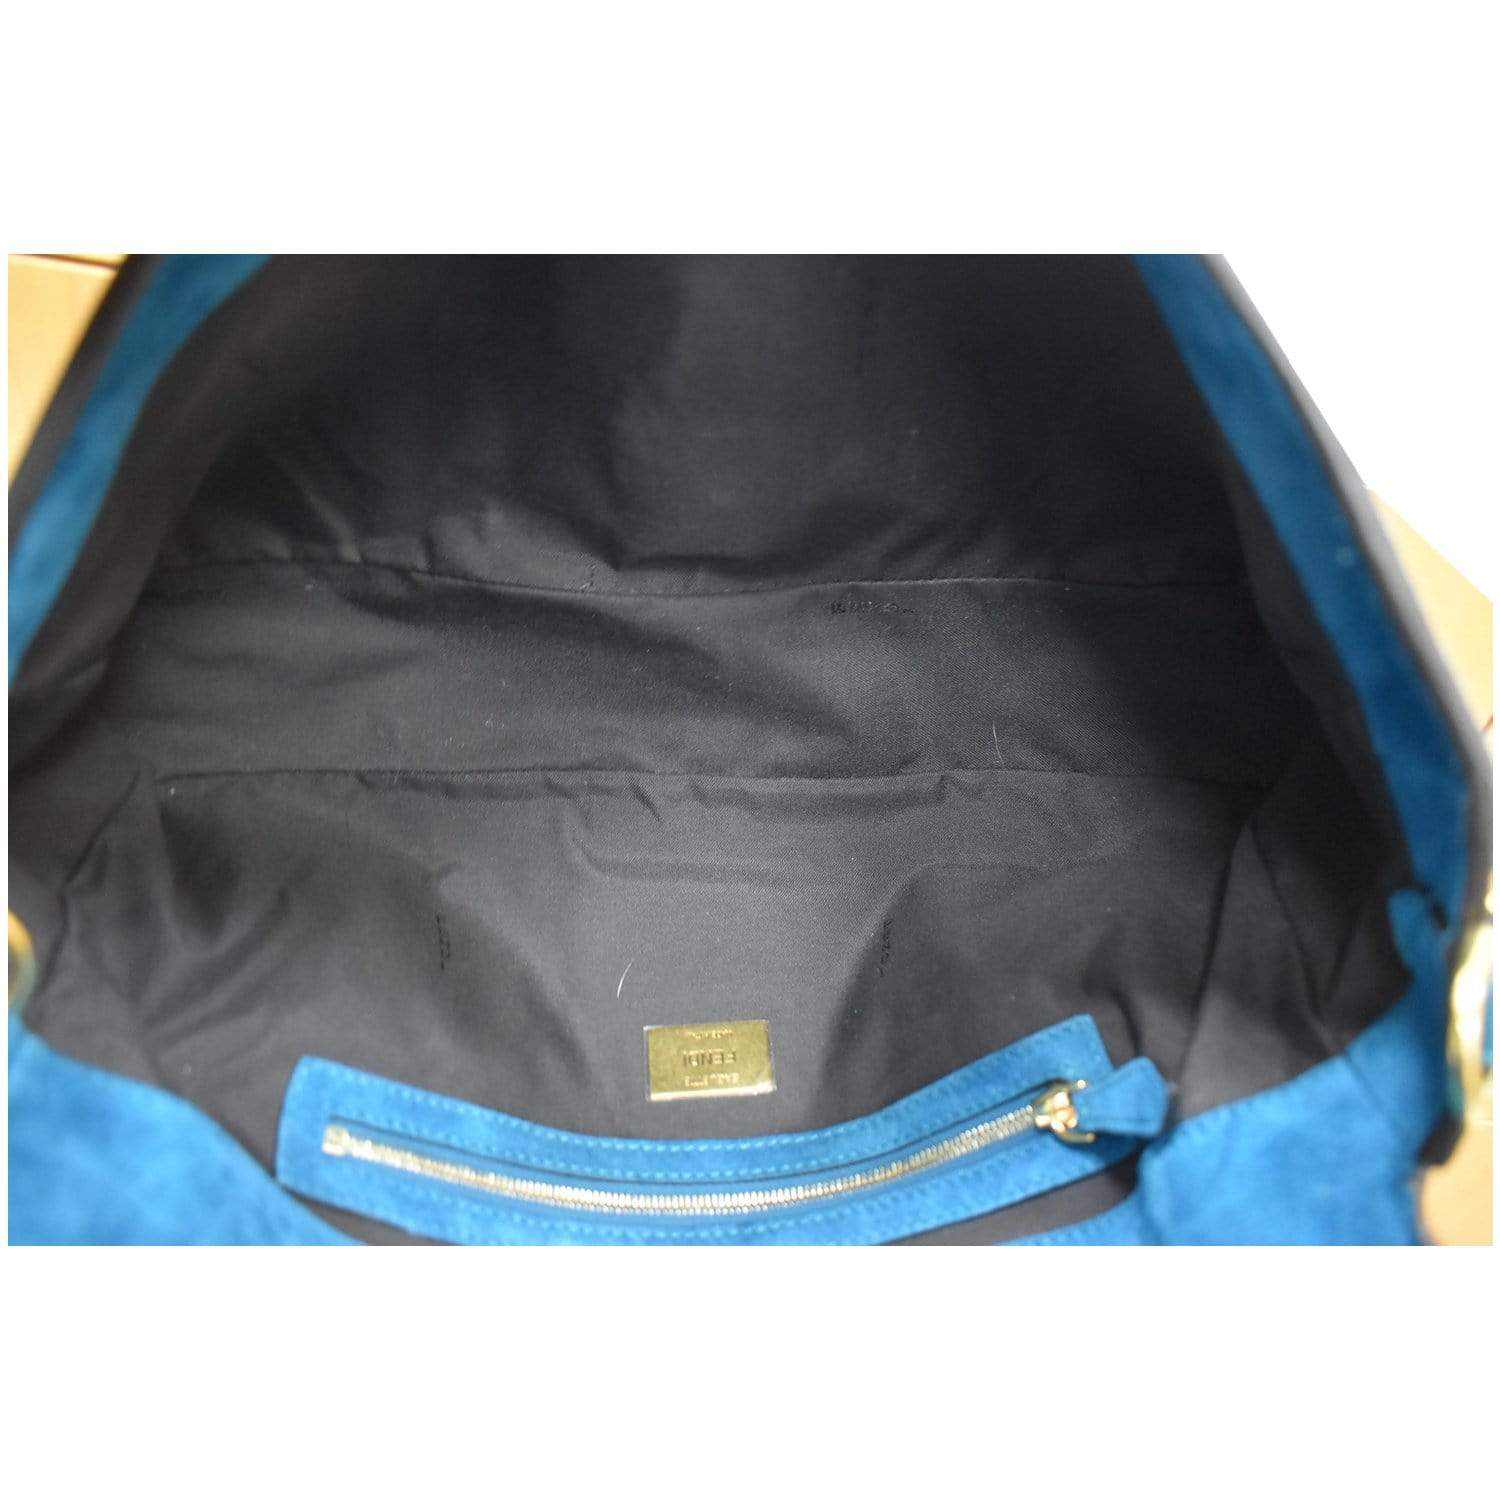 Fendi Baguette Large Suede Shoulder Bag Blue - DDH